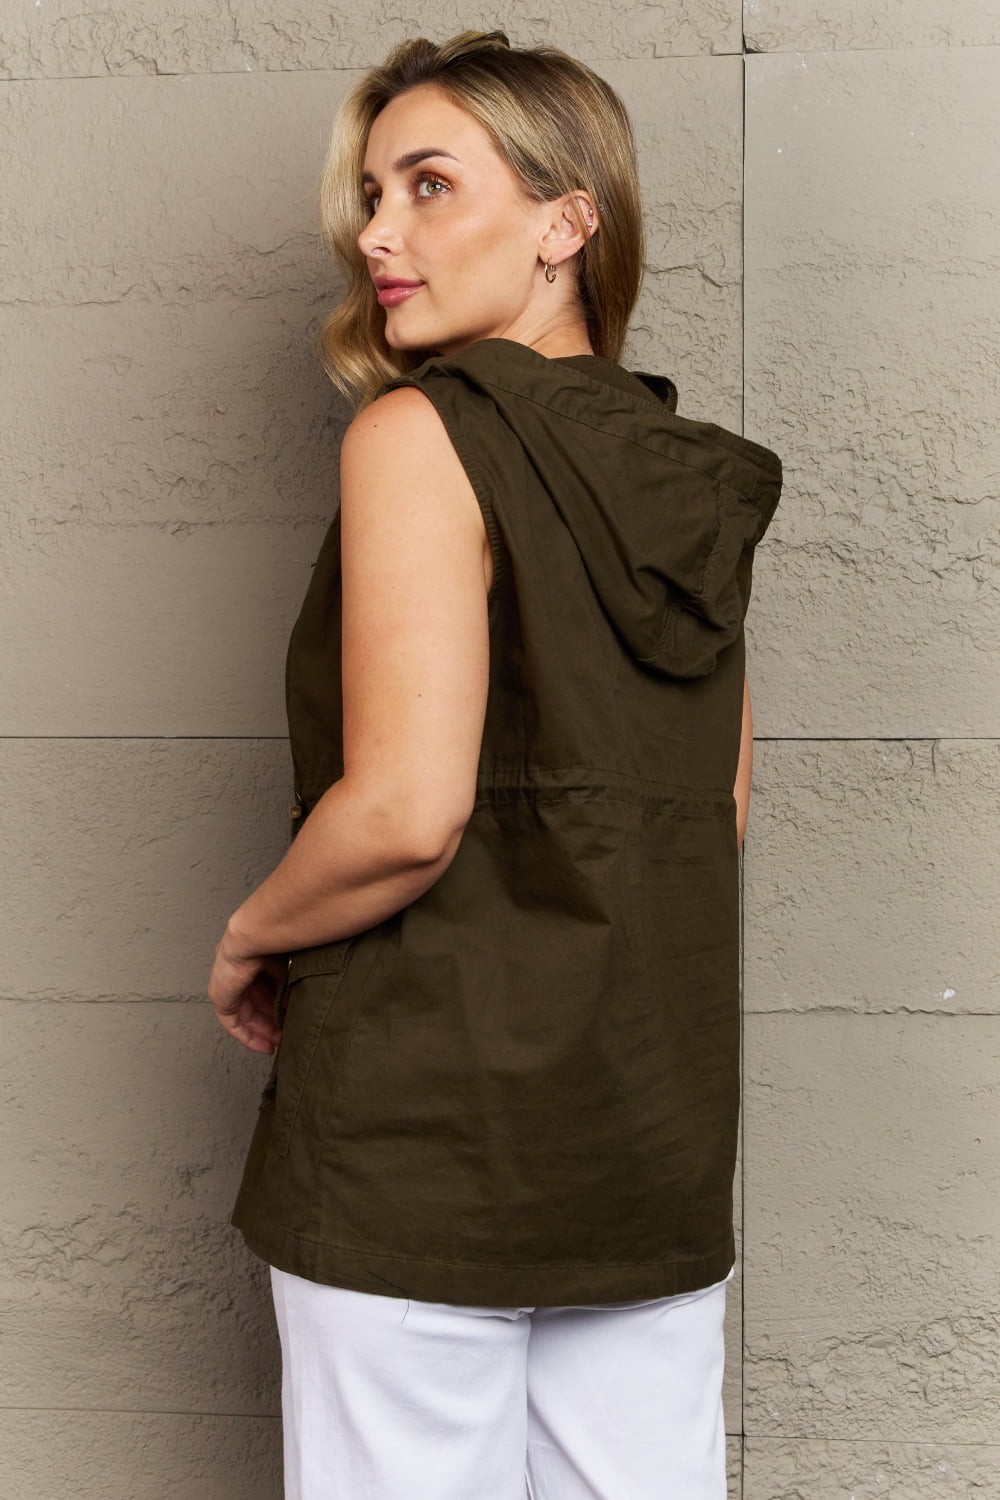 Women's Full Size Military Hooded Vest